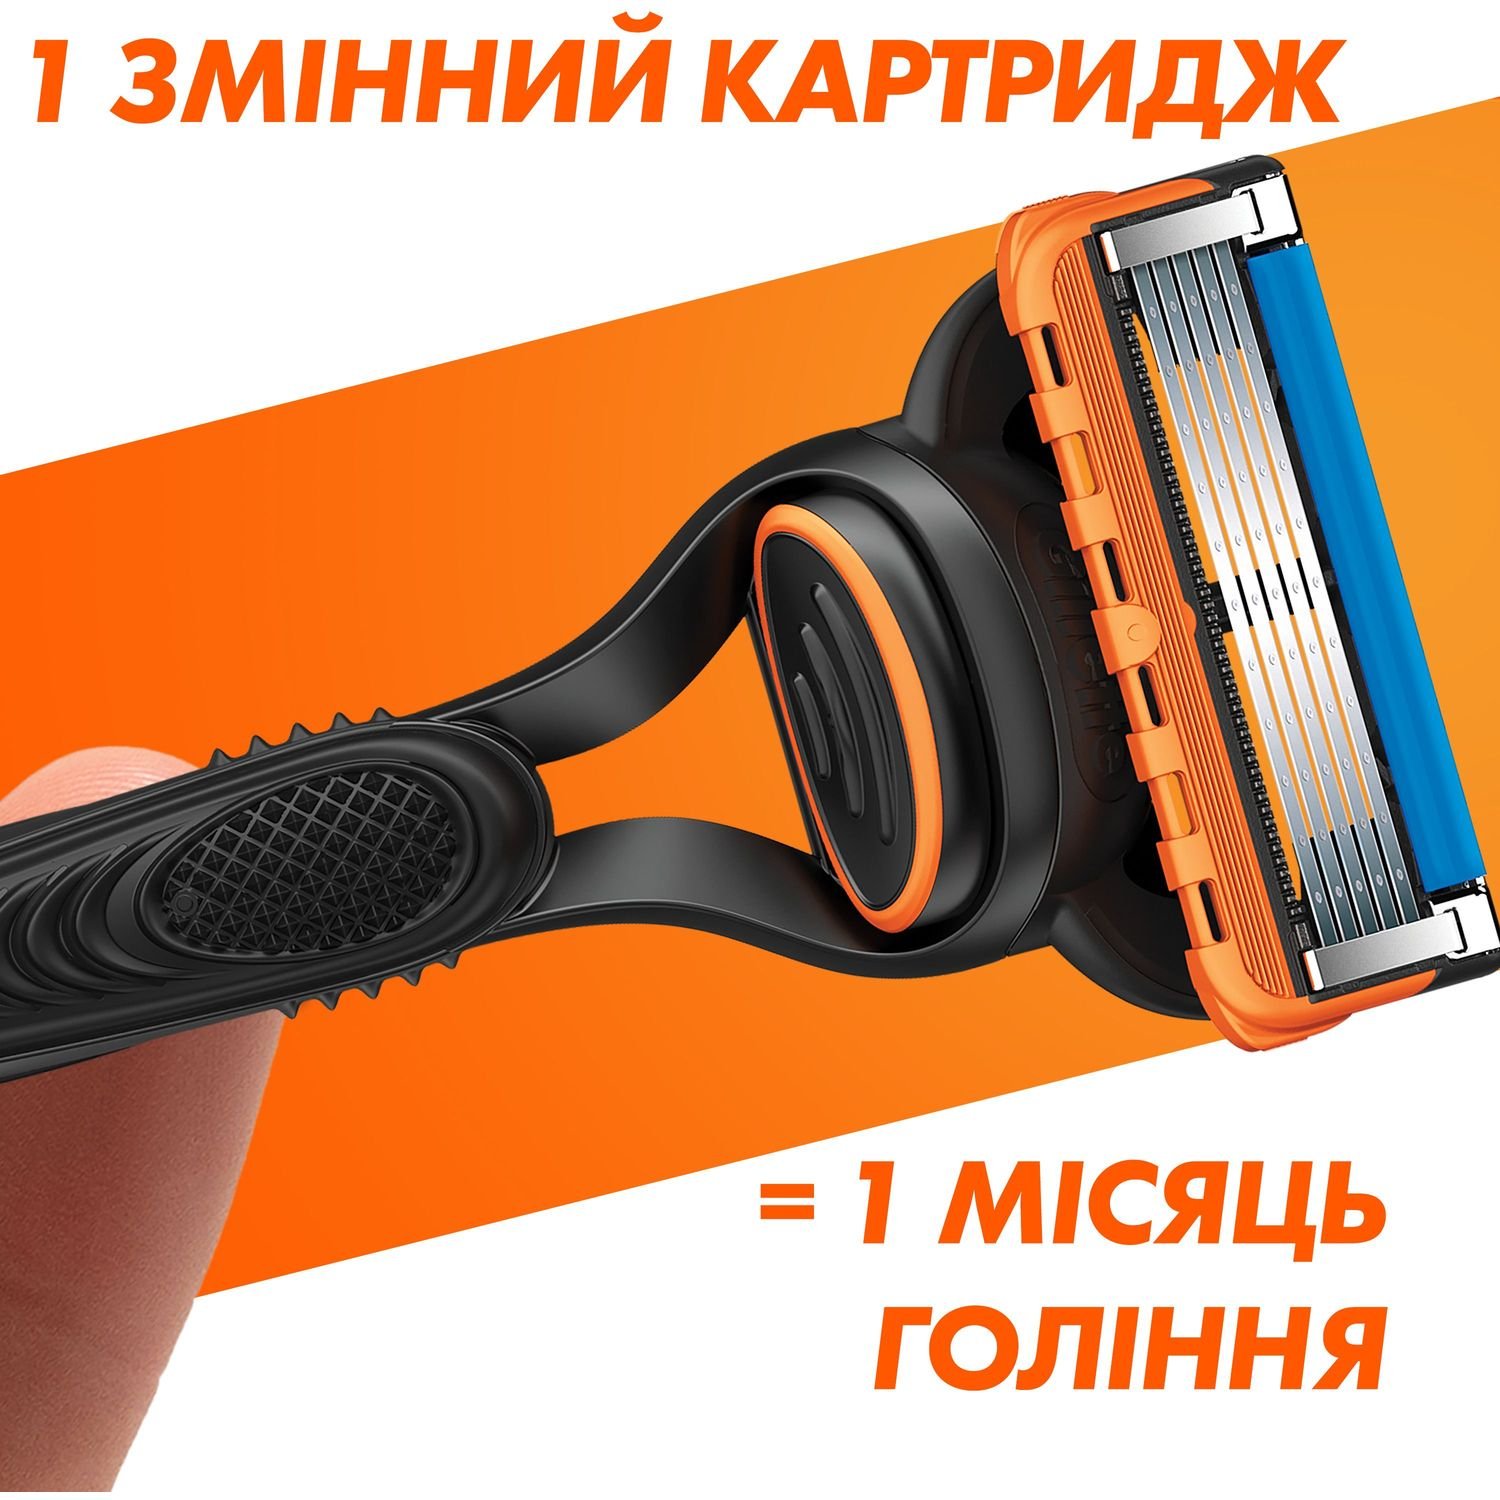 Сменные картриджи для бритья мужские Gillette Fusion5 12 шт. - фото 5